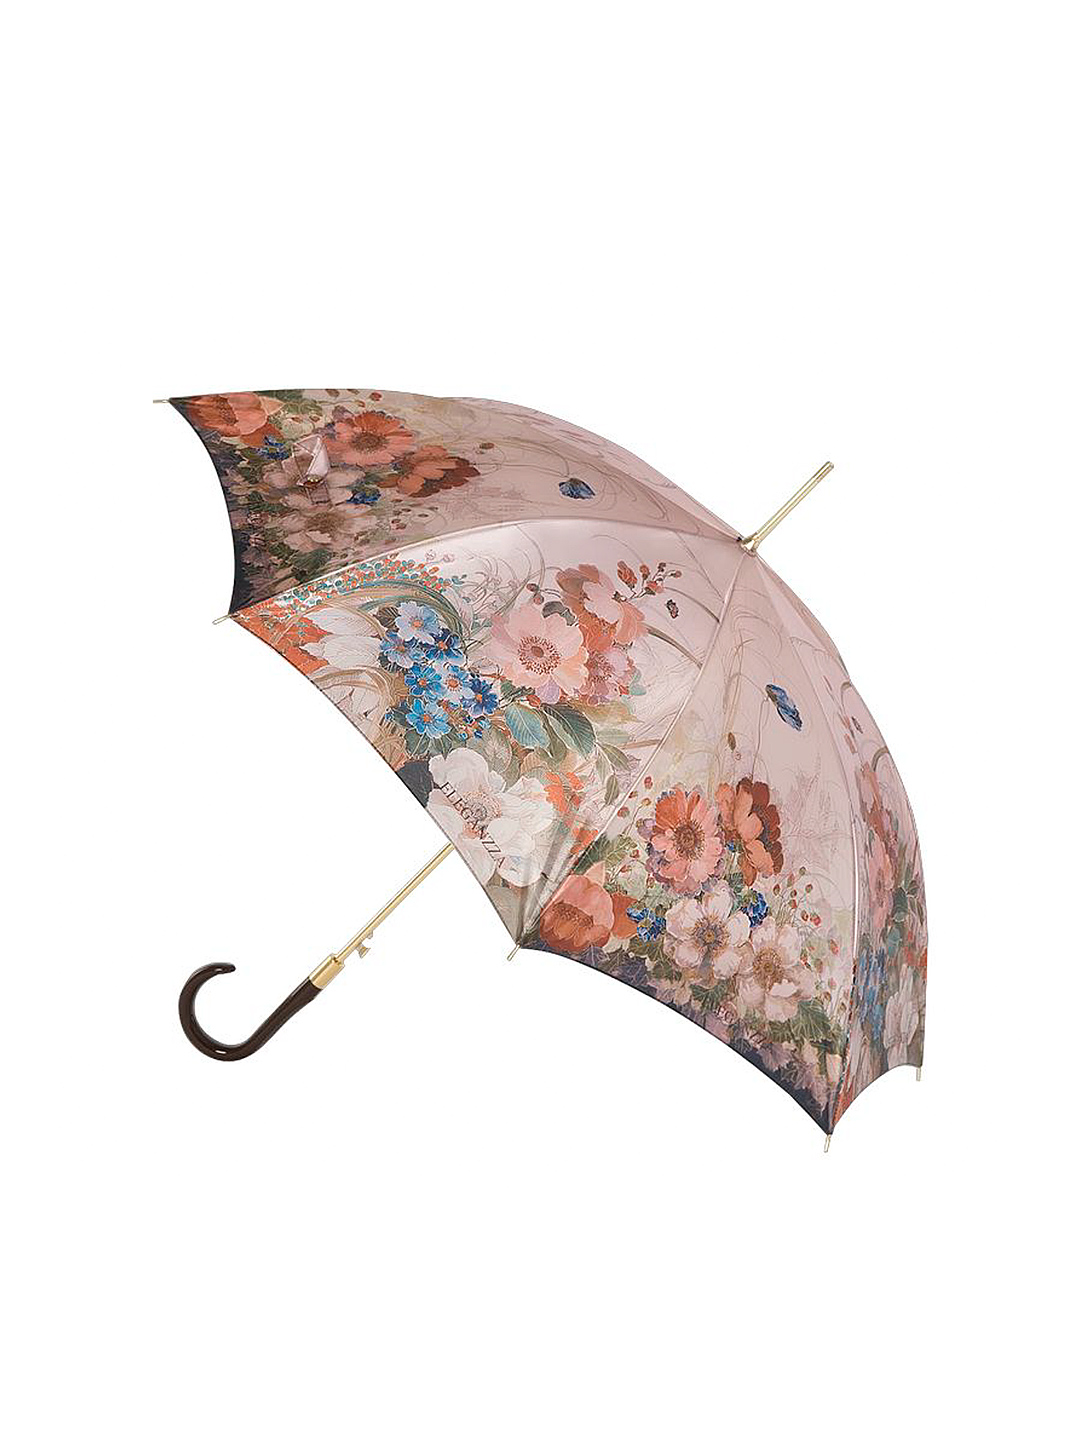 Купить зонтик на озоне. Зонт Элеганза. Зонт sz114midib. Зонт Элеганза модель 2015 года. Зонтик женский бежевый.